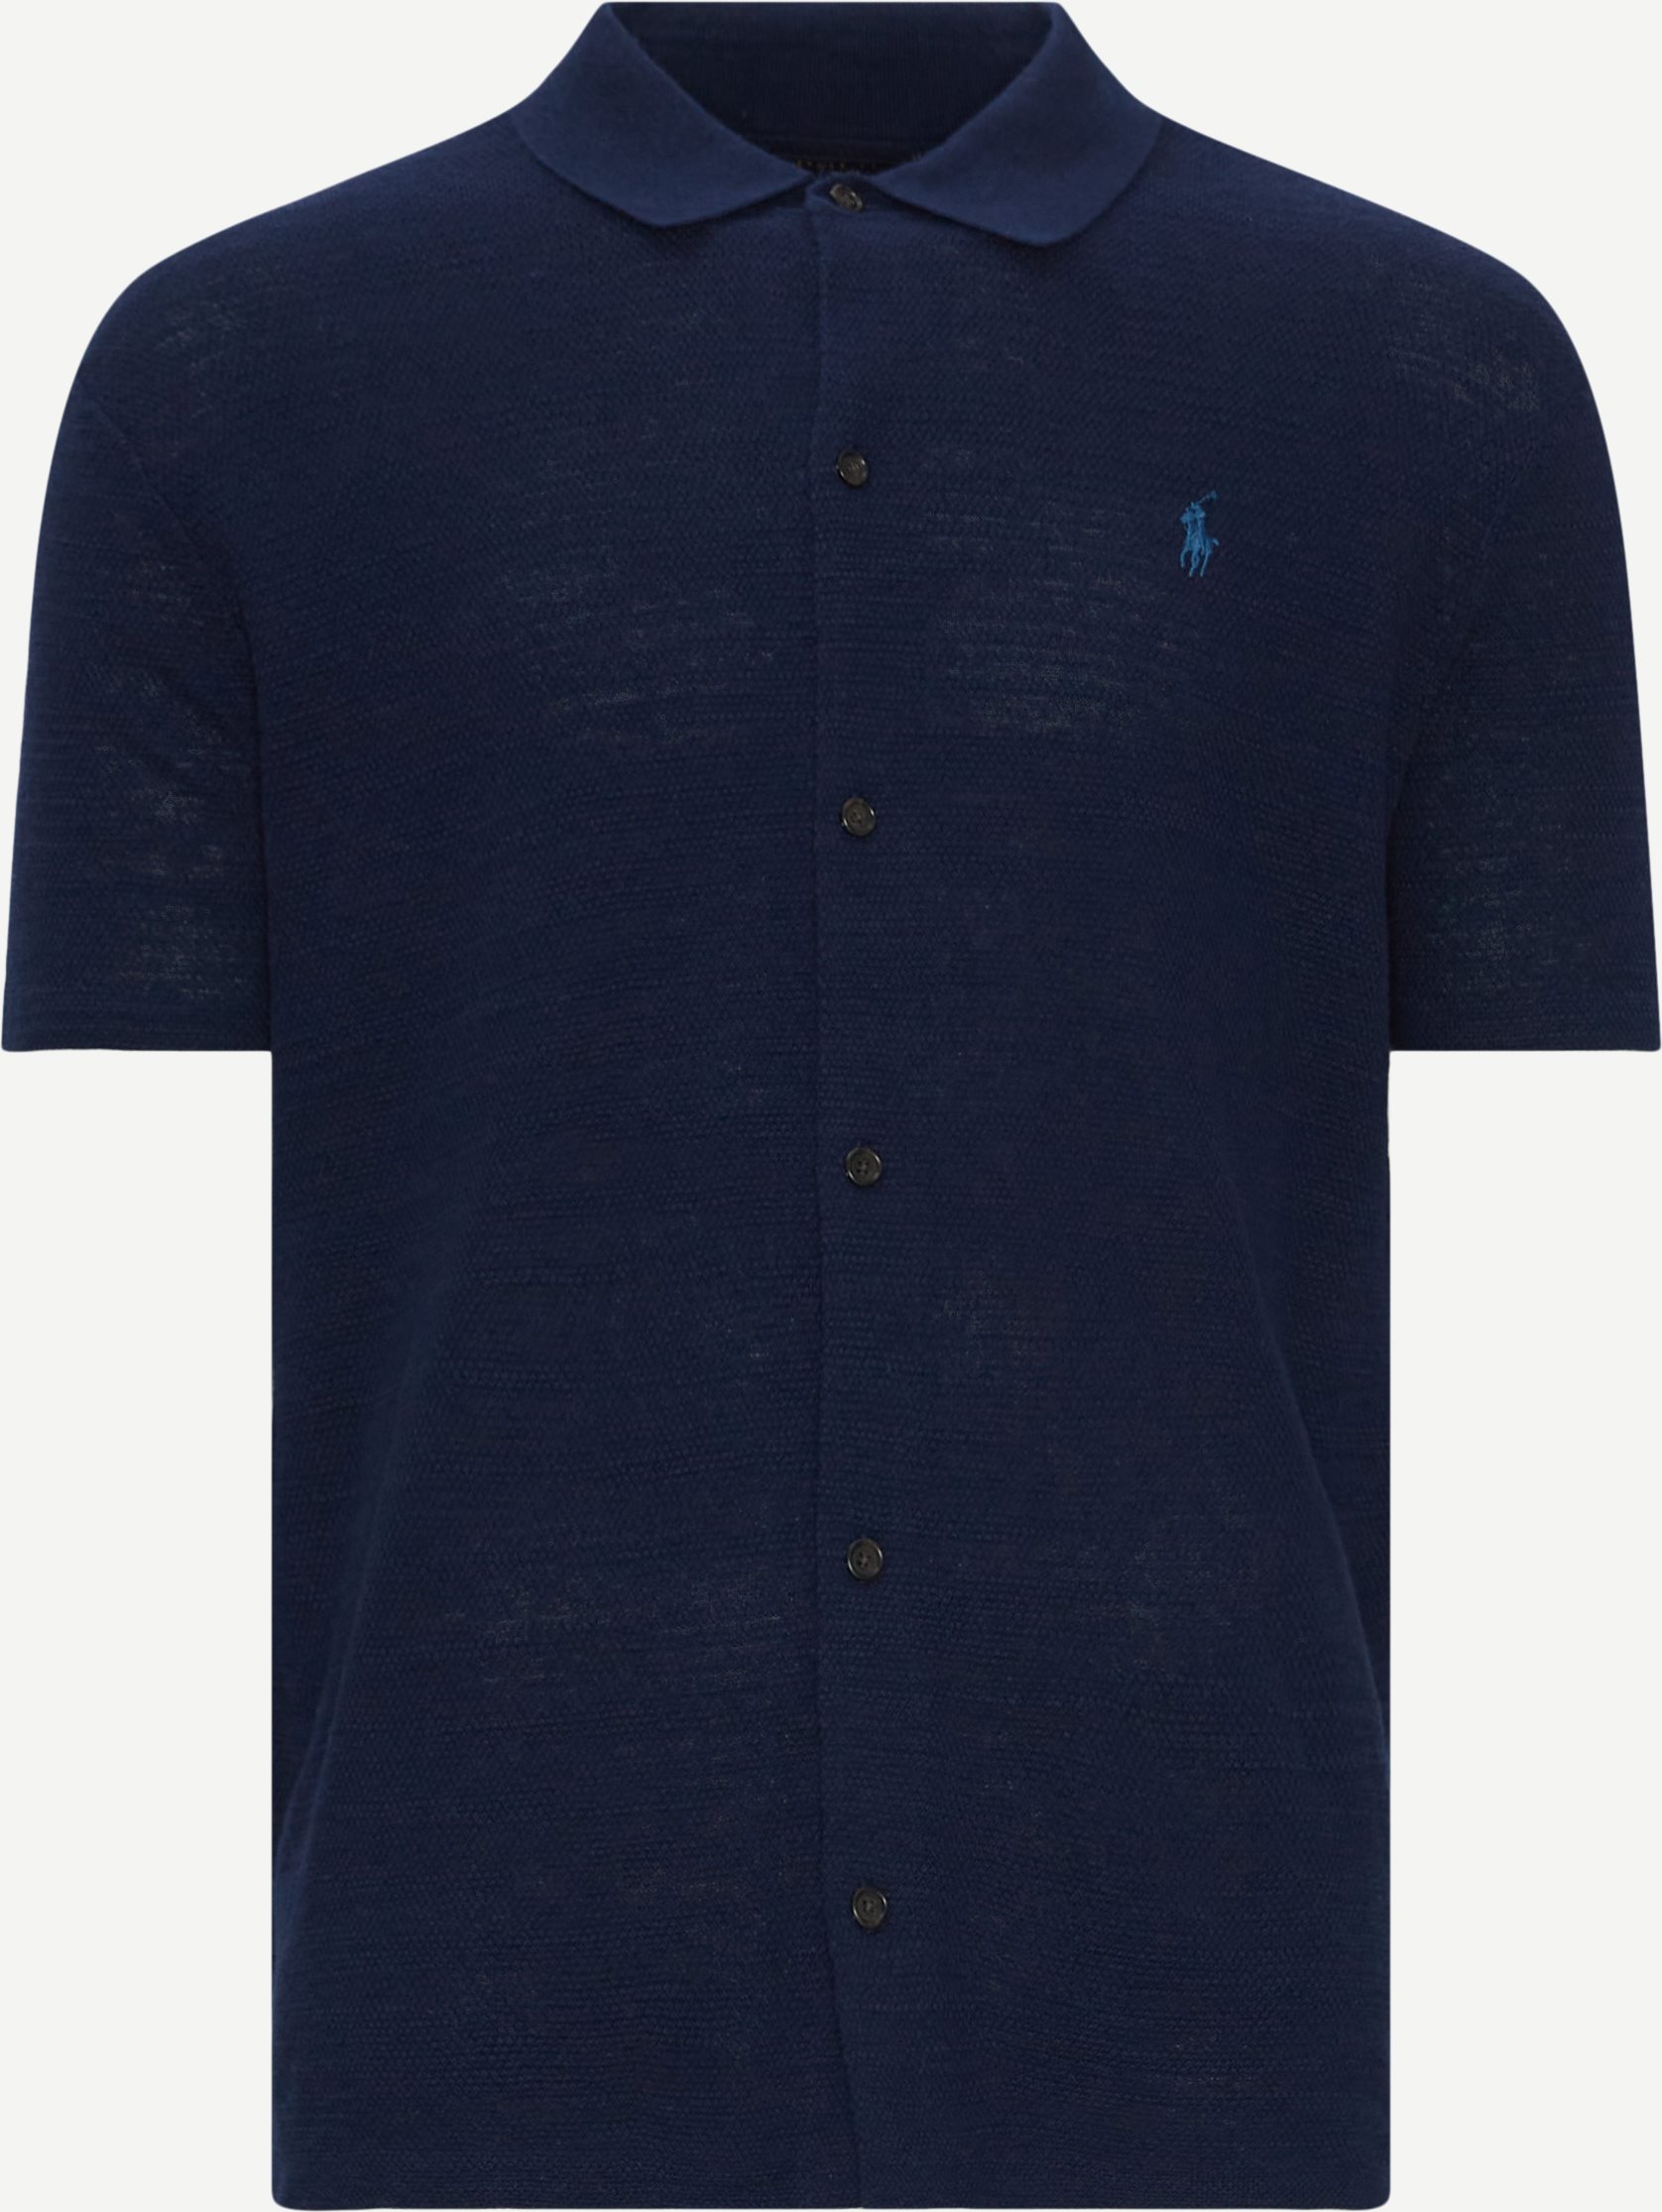 Polo Ralph Lauren Short-sleeved shirts 710941096 SS SHIRT Blue